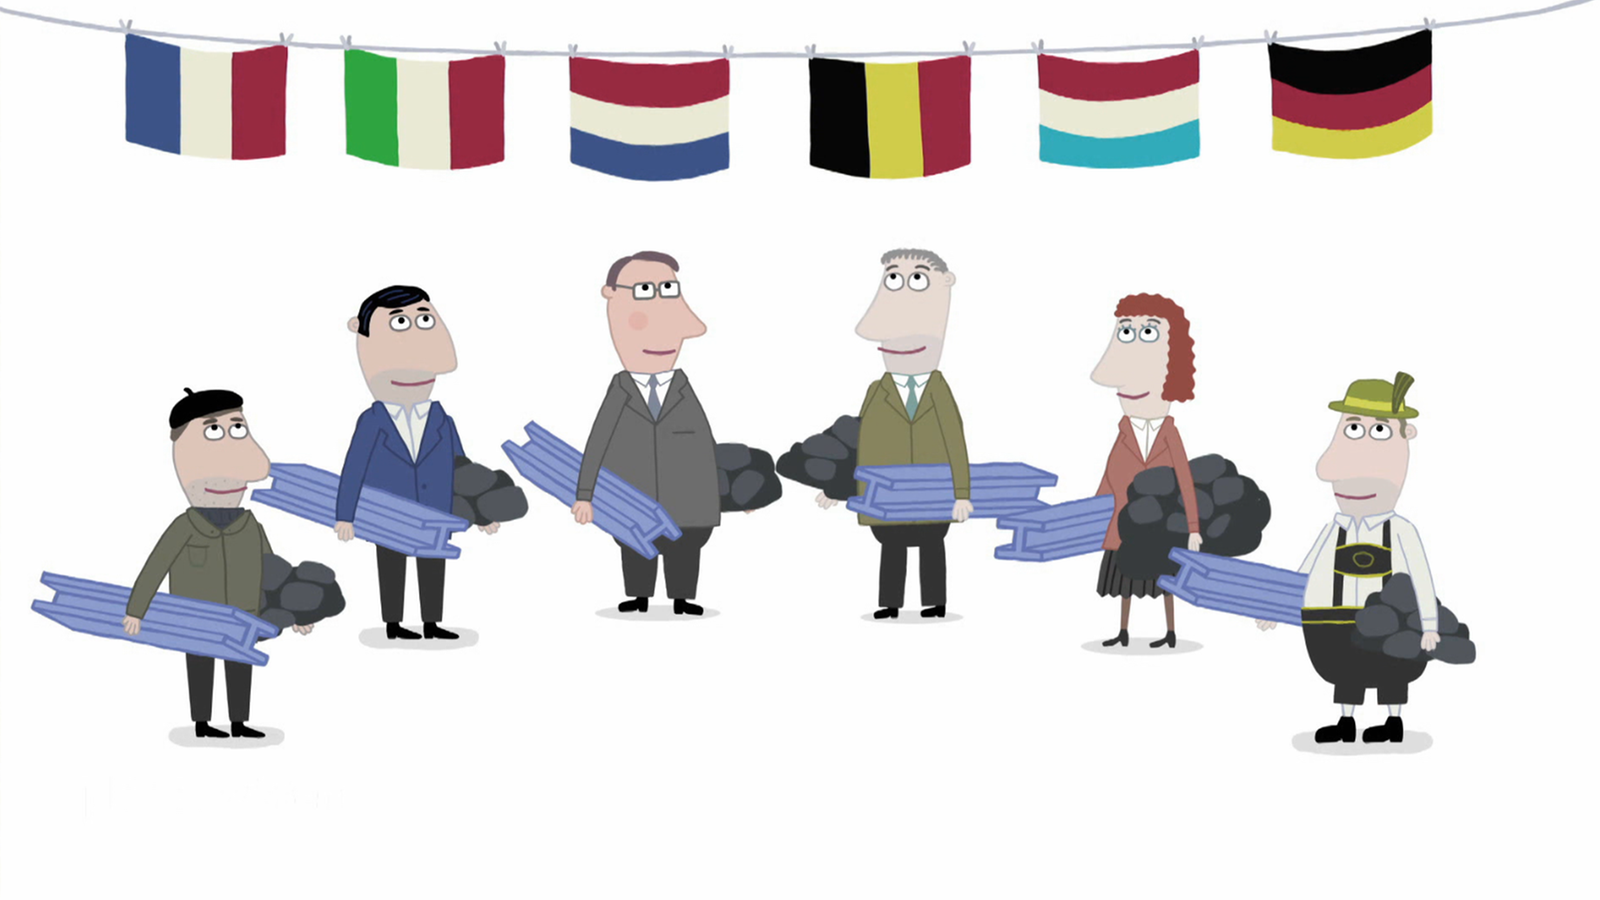 Zeichnung von sechs Menschen unter sechs europäischen Flaggen